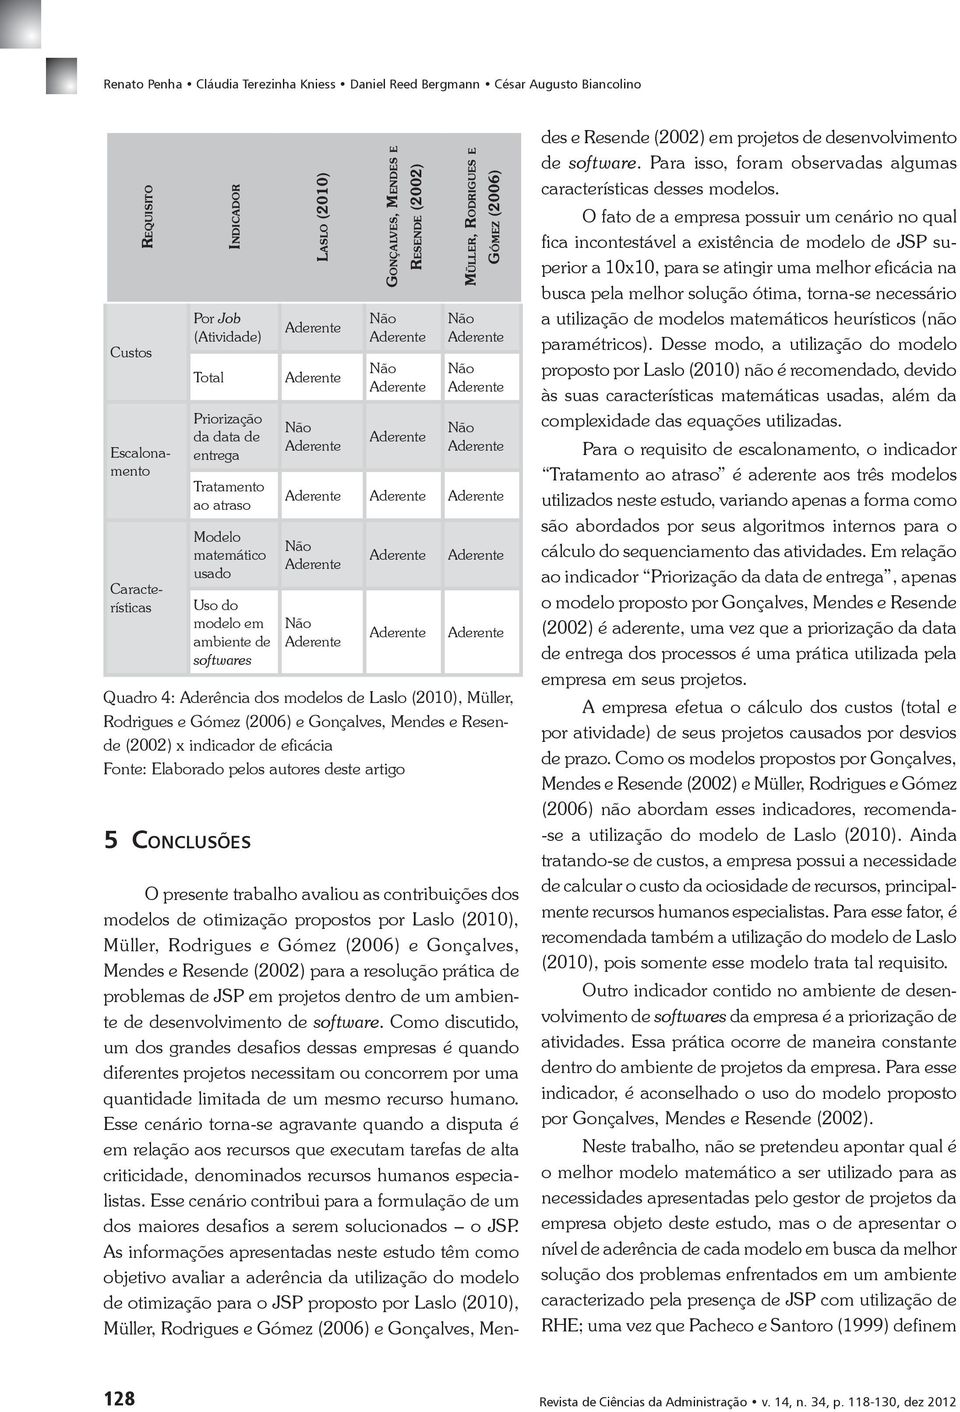 x indicador de eficácia Fonte: Elaborado pelos autores deste artigo 5 CONCLUSÕES O presente trabalho avaliou as contribuições dos modelos de otimização propostos por Laslo (2010), Müller, Rodrigues e